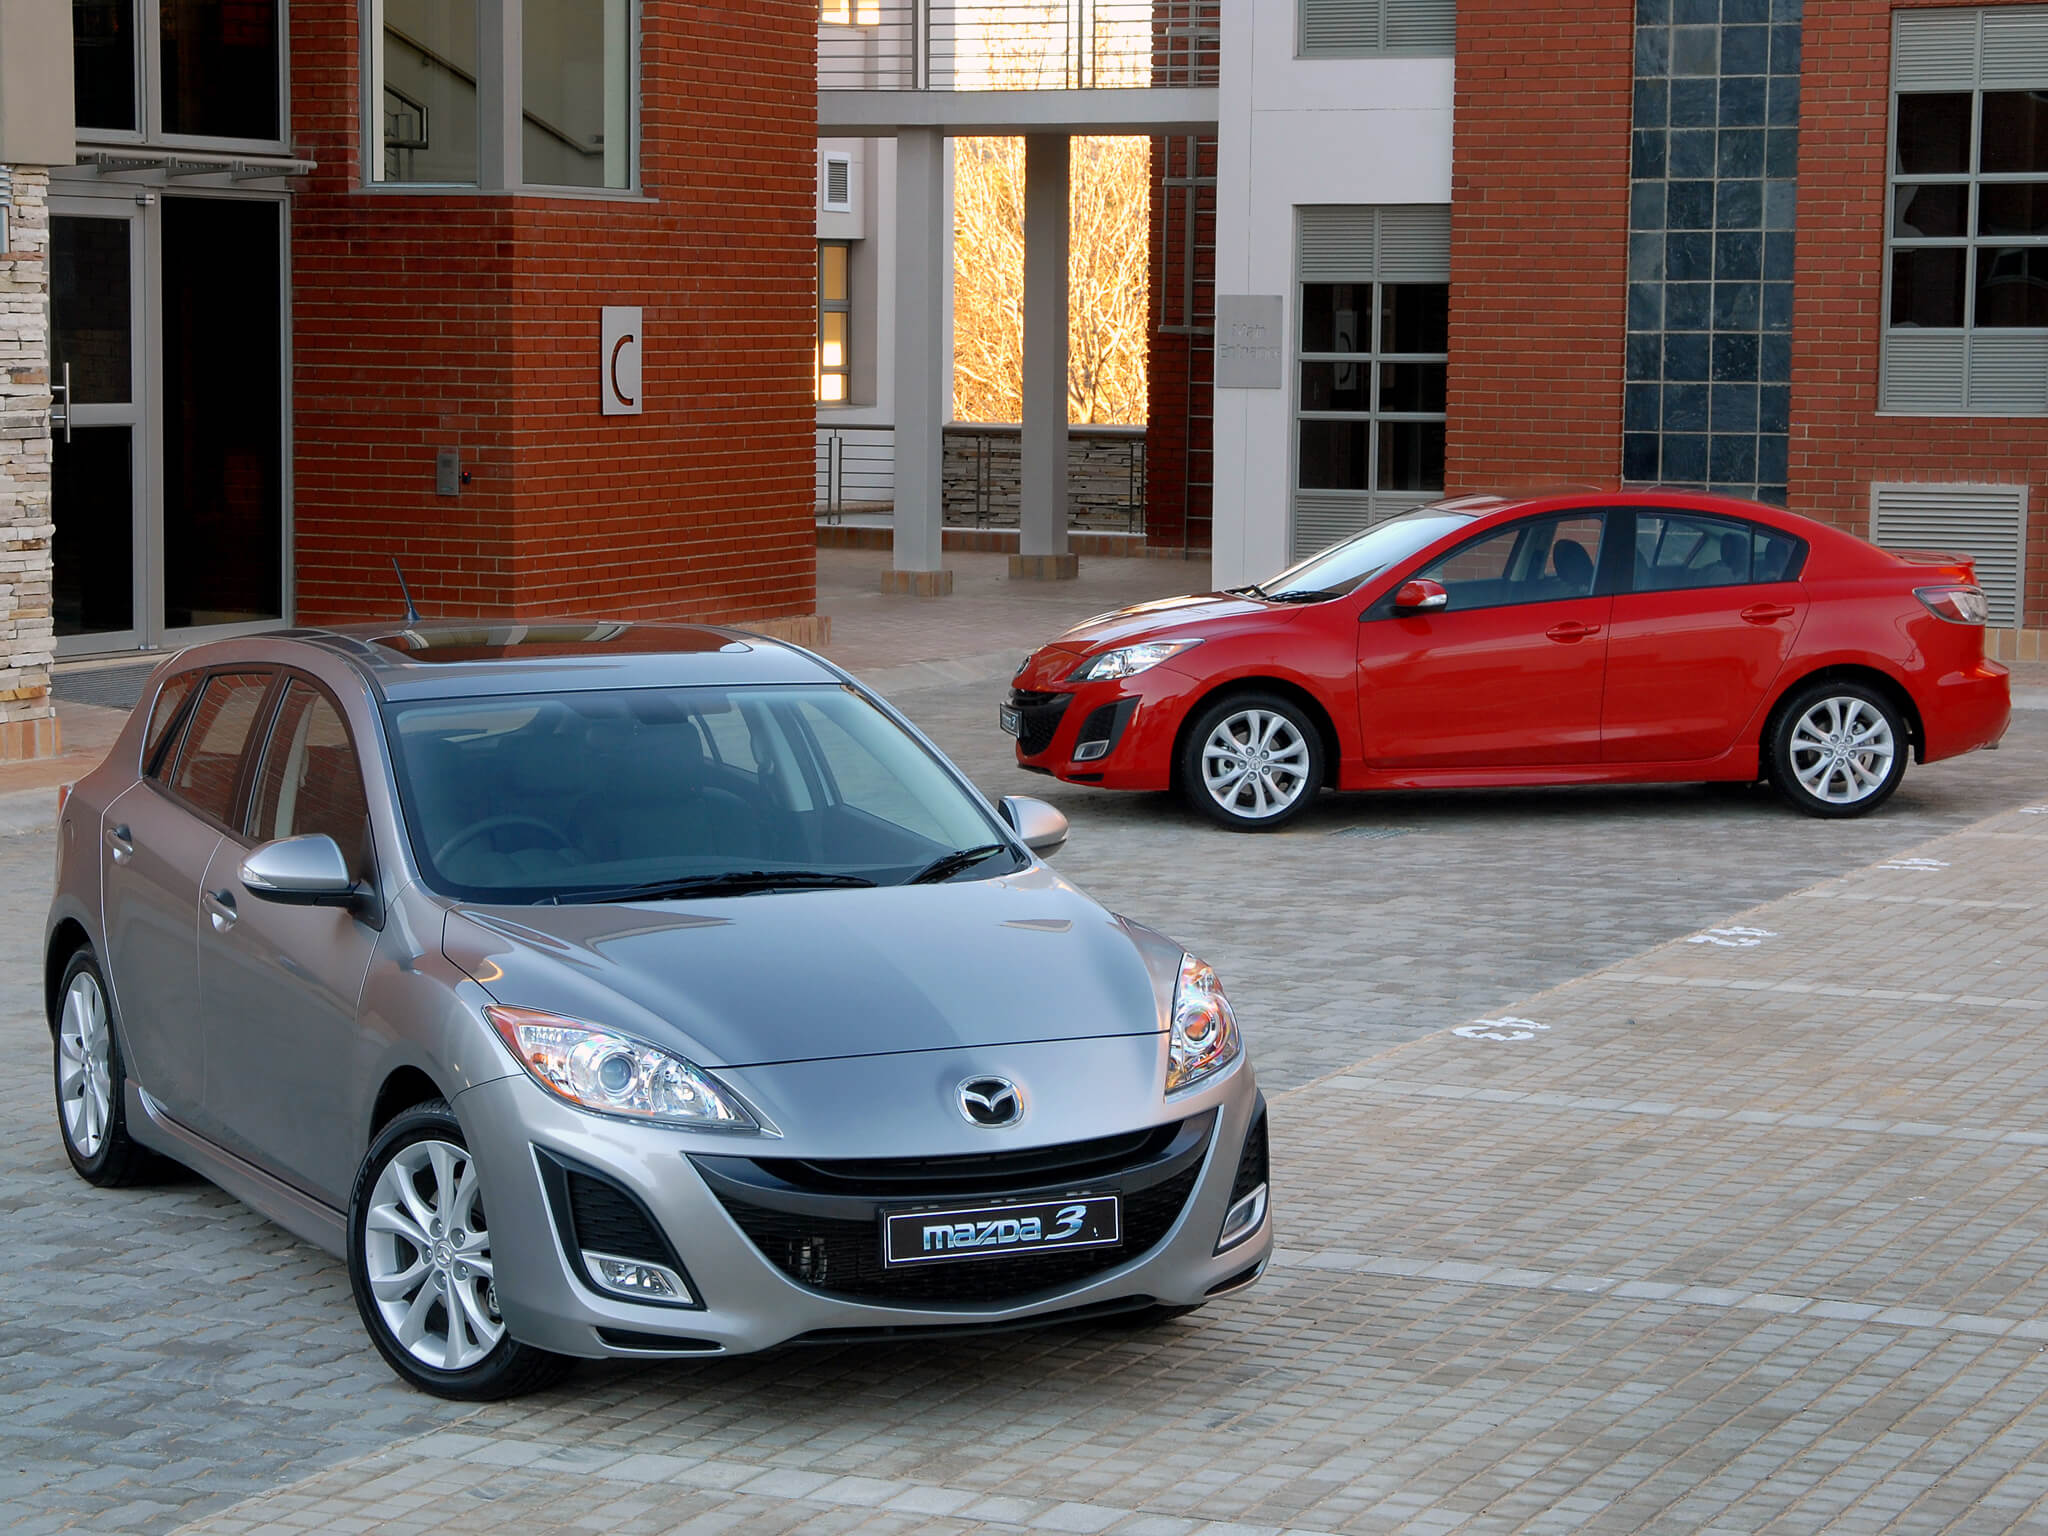 Топ машин до 500. Mazda 3 BL. Mazda 3 BL 2009. Мазда 3 второе поколение. Мазда 3 2 поколение седан.